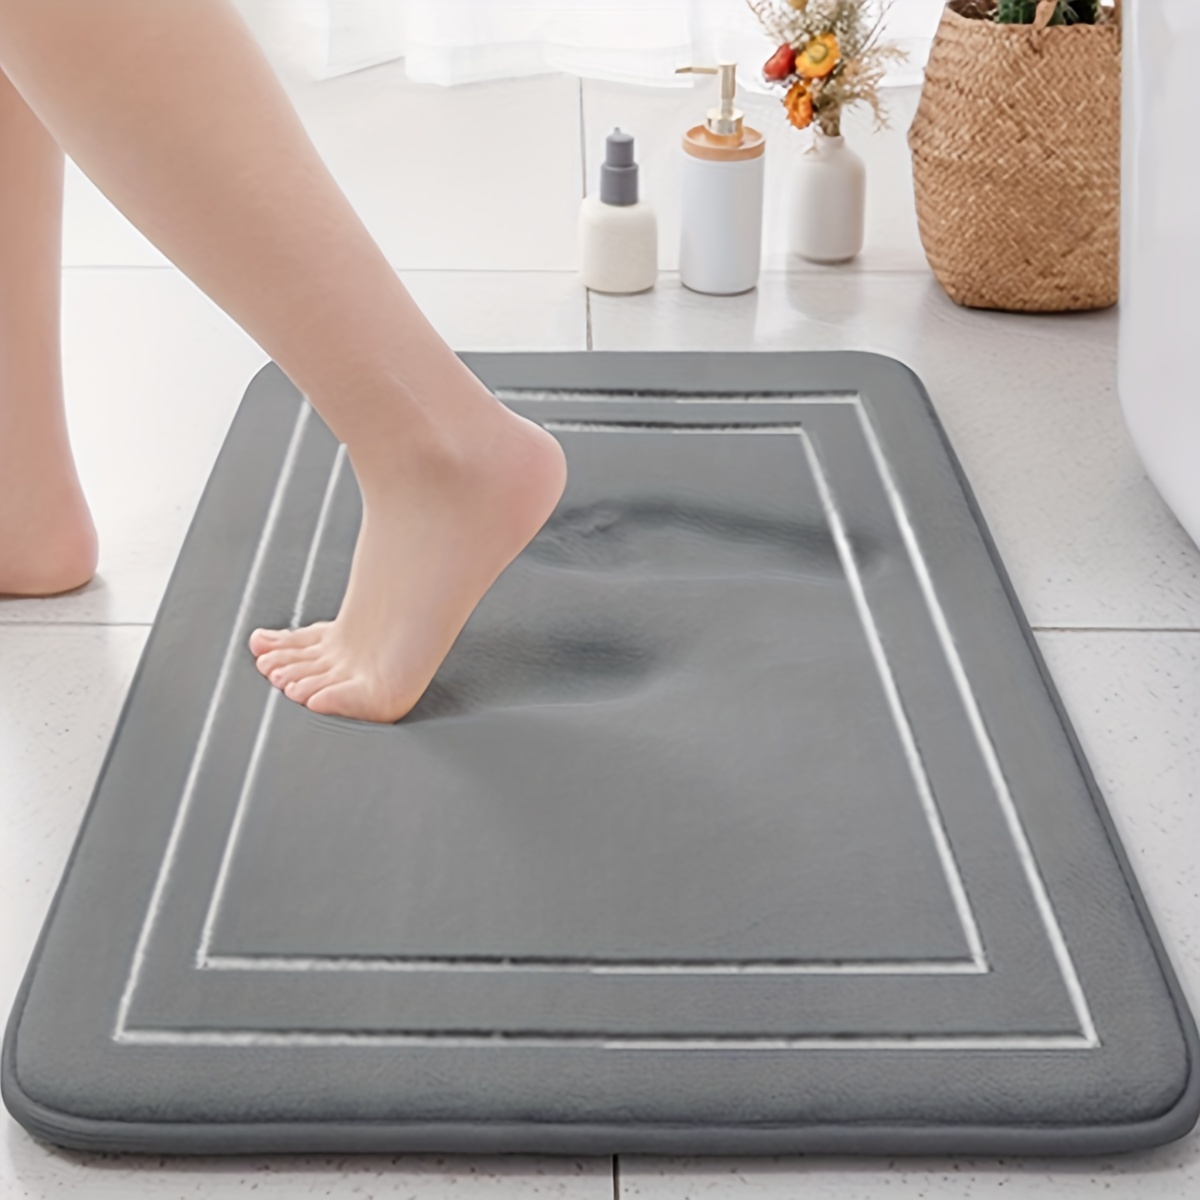 Super absorbent floor mats,anti-dirt,foam shape bath mats,non-slip shower  mats,anti-sheet microfiber bath mats